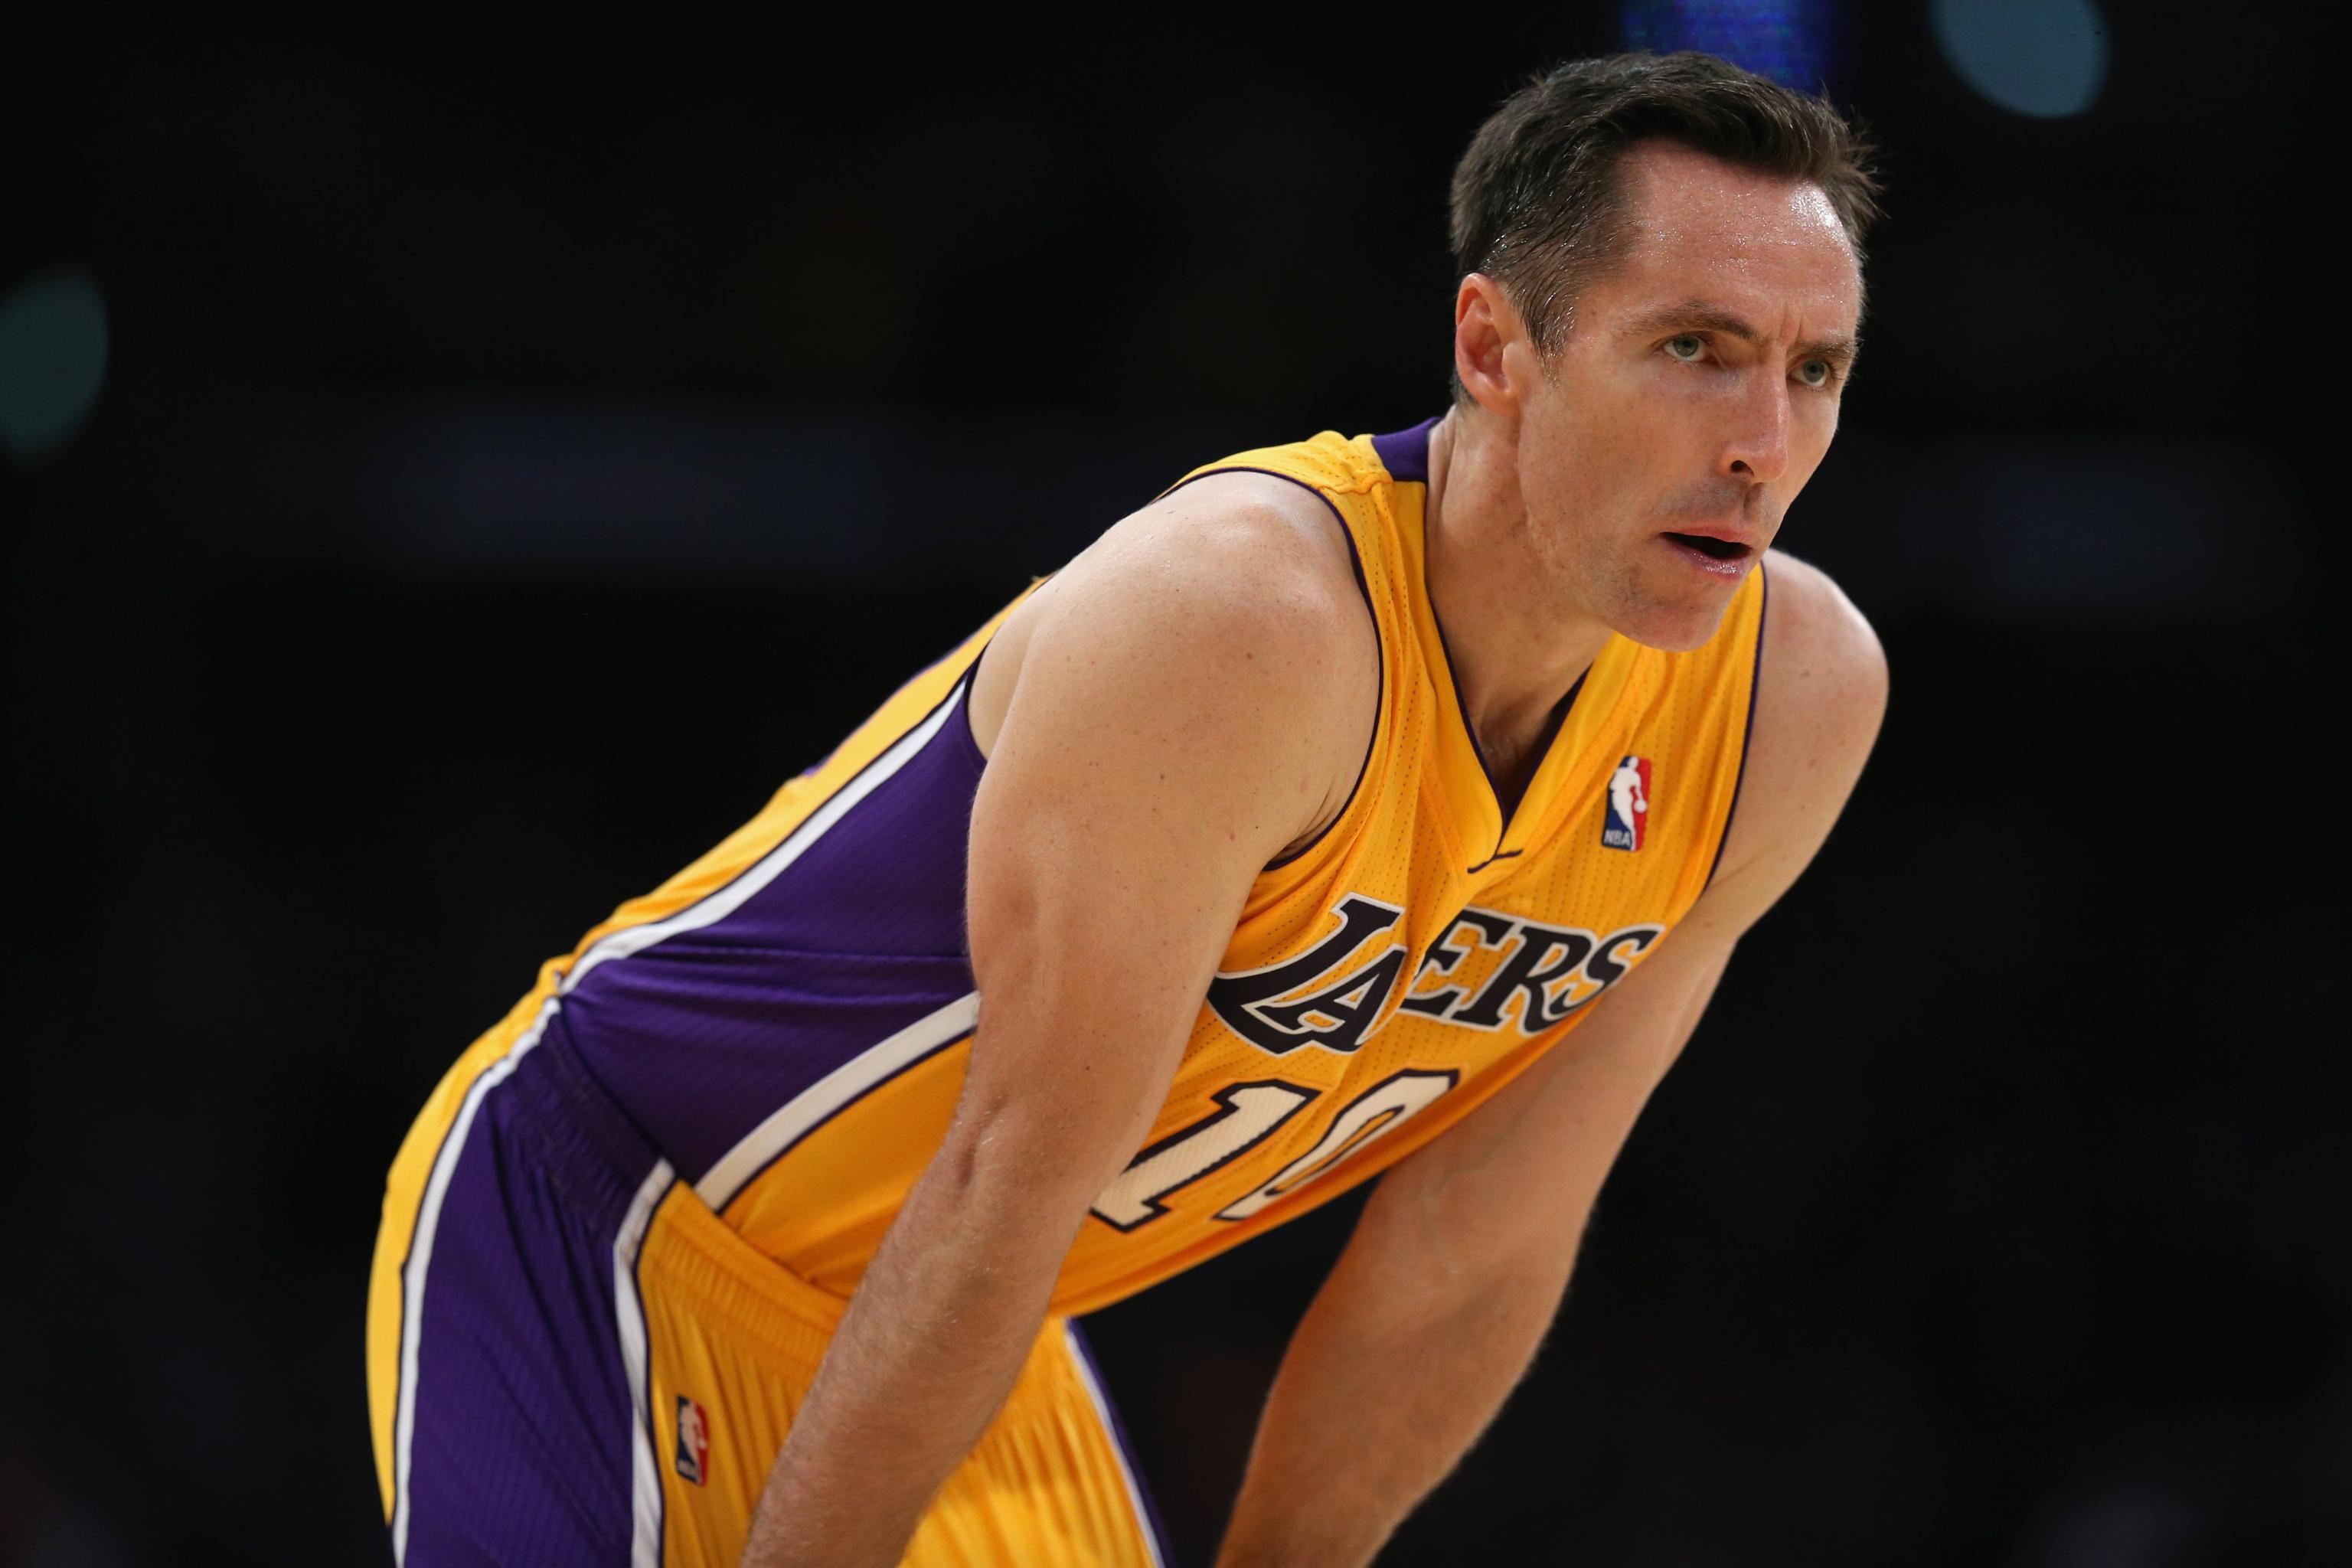 Lakers land Steve Nash for draft picks